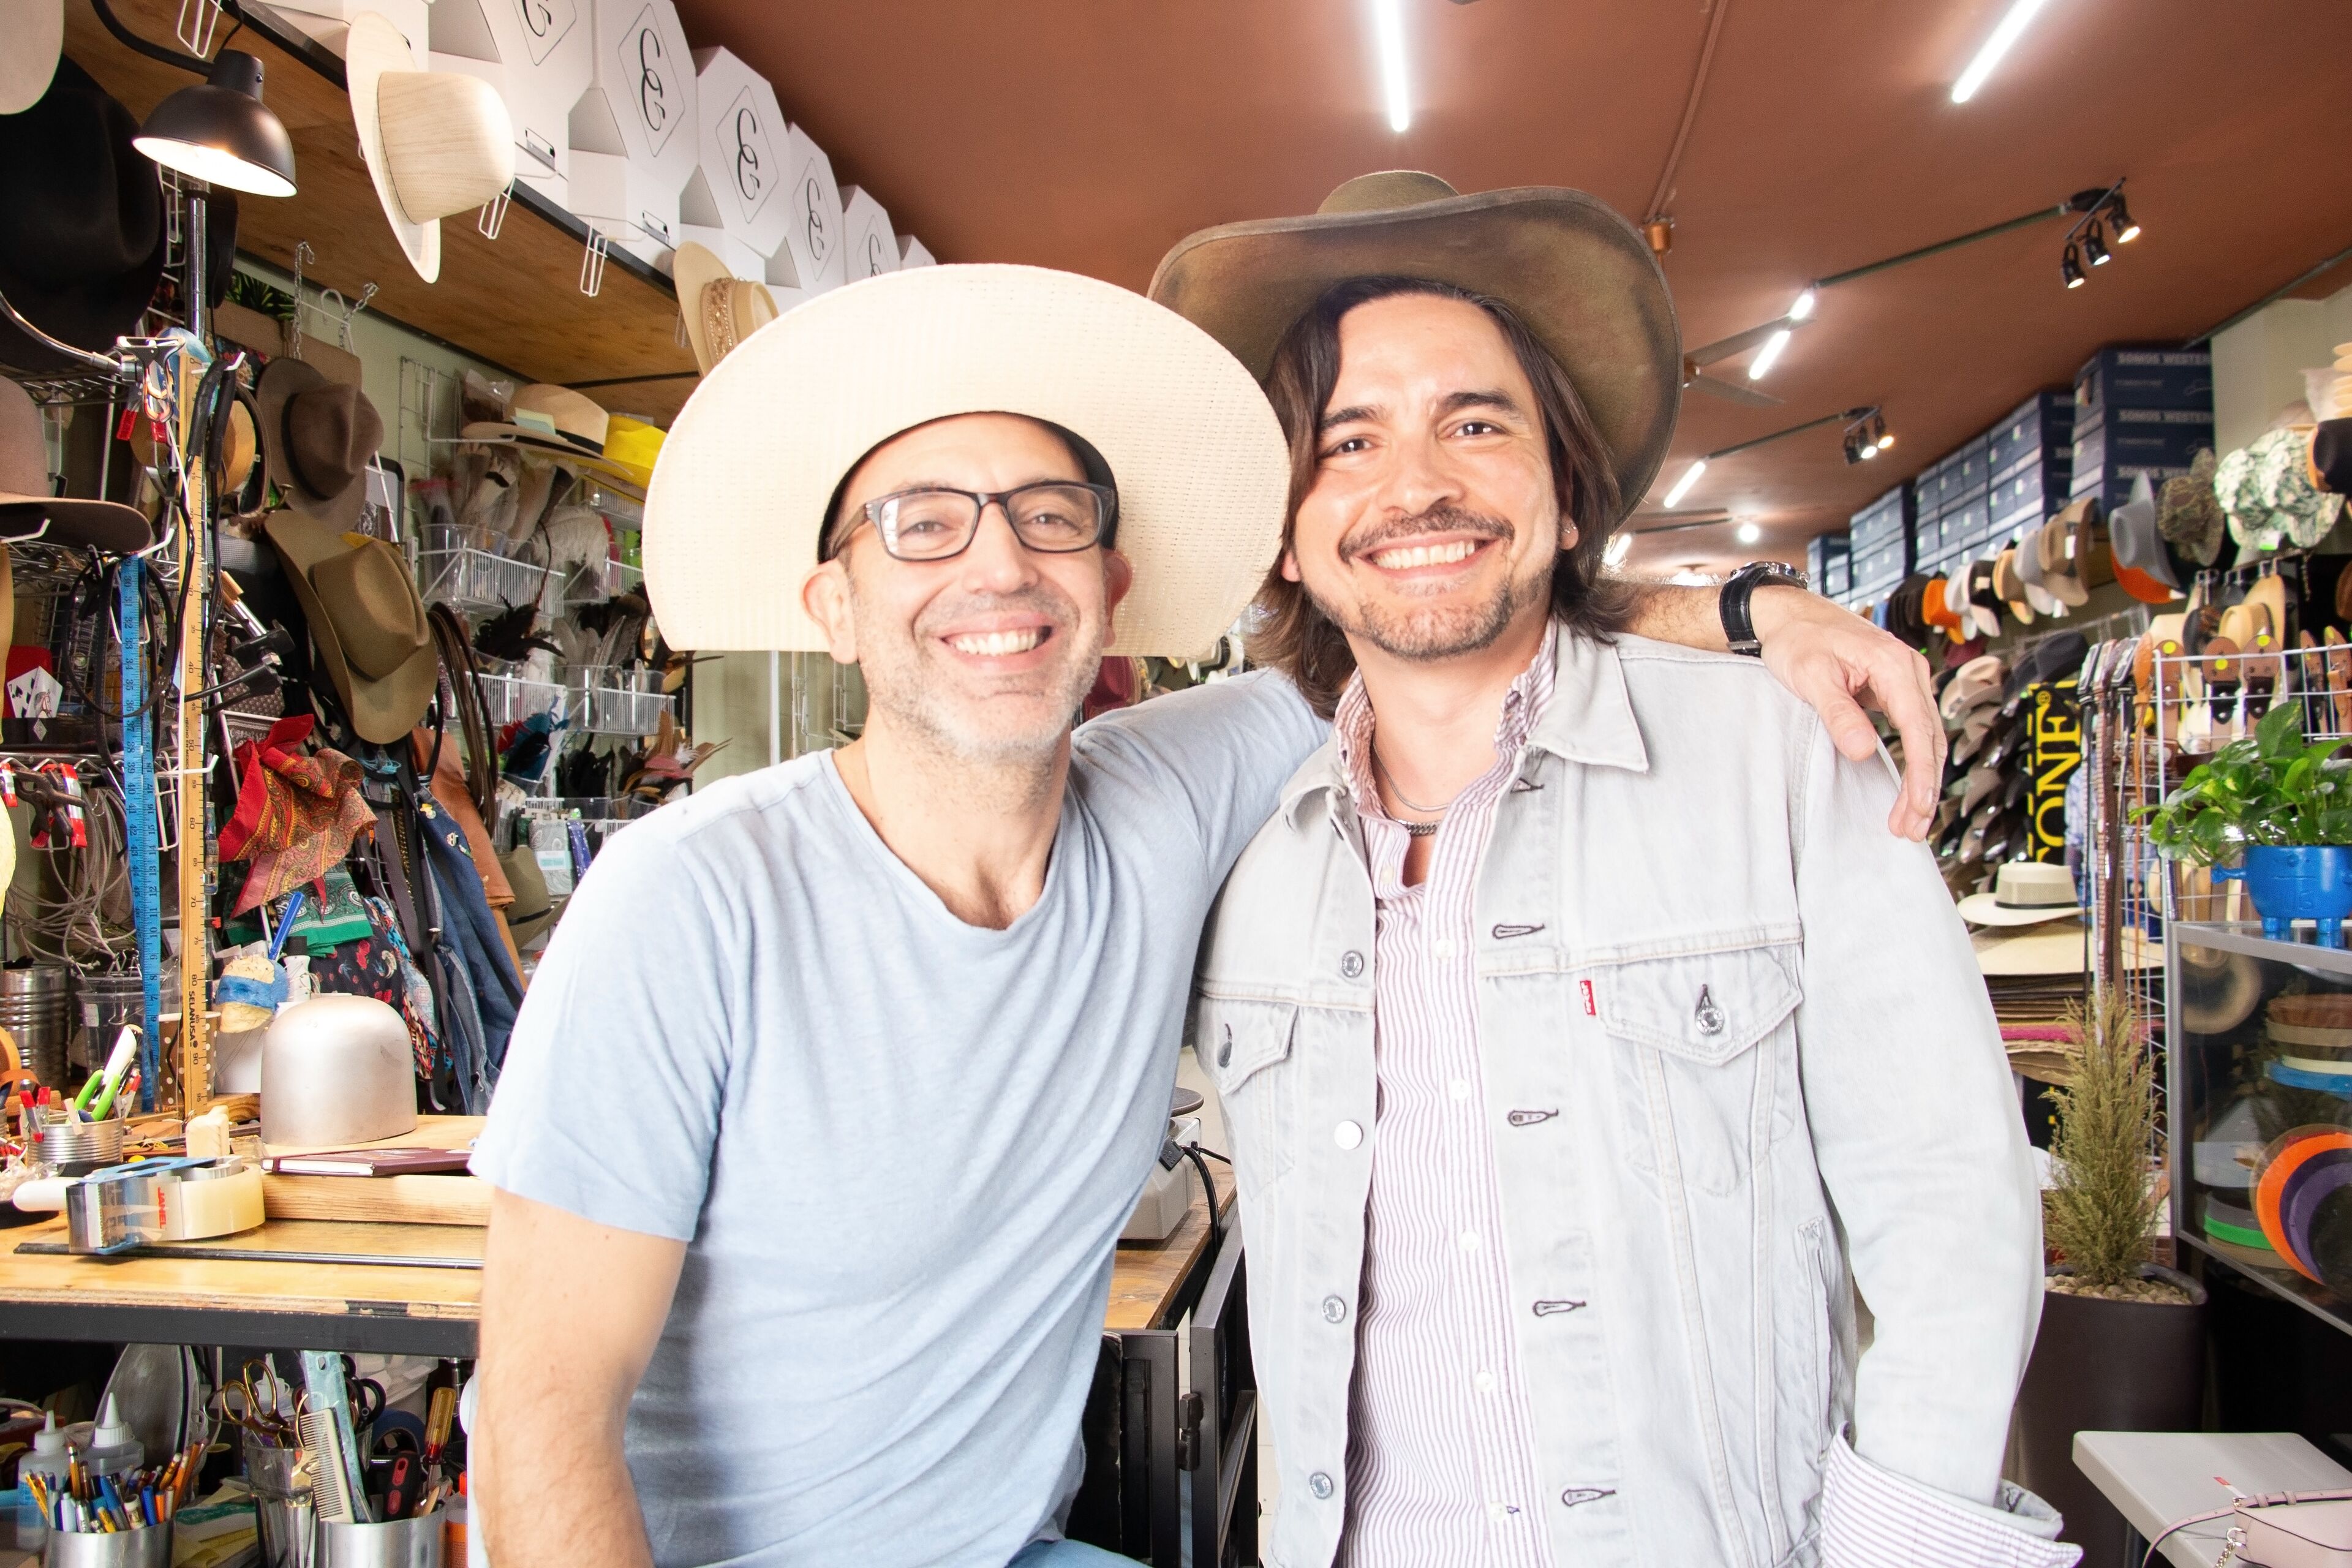 Dos hombres sonrientes en una tienda de sombreros con varios estilos. Uno lleva un fedora blanco y el otro un sombrero de vaquero, mostrando un ambiente de negocio alegre.